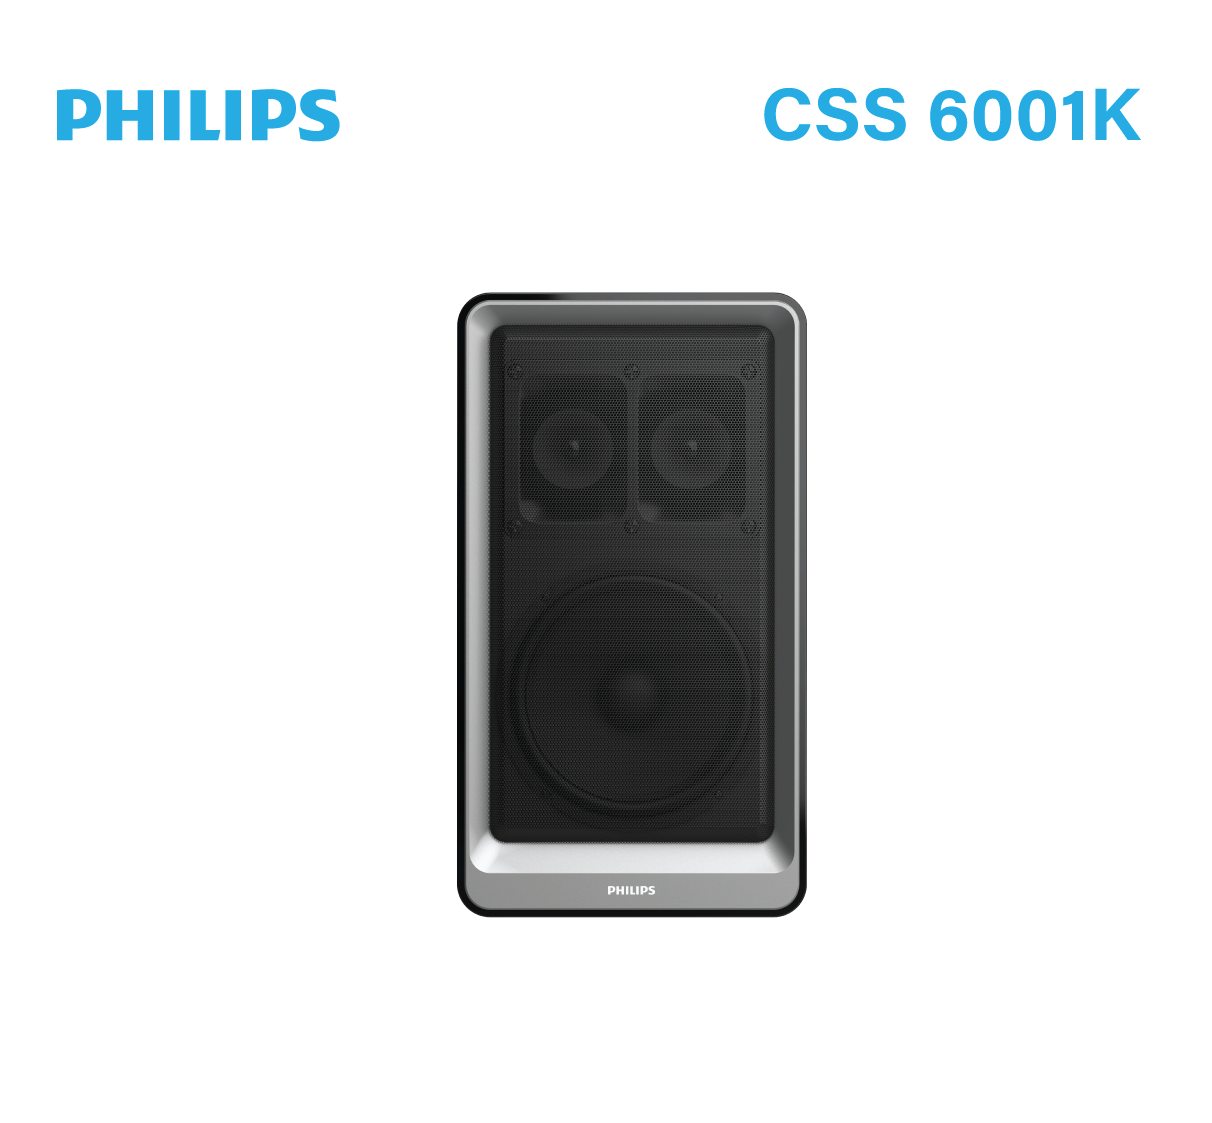 Philips CSS 6001K